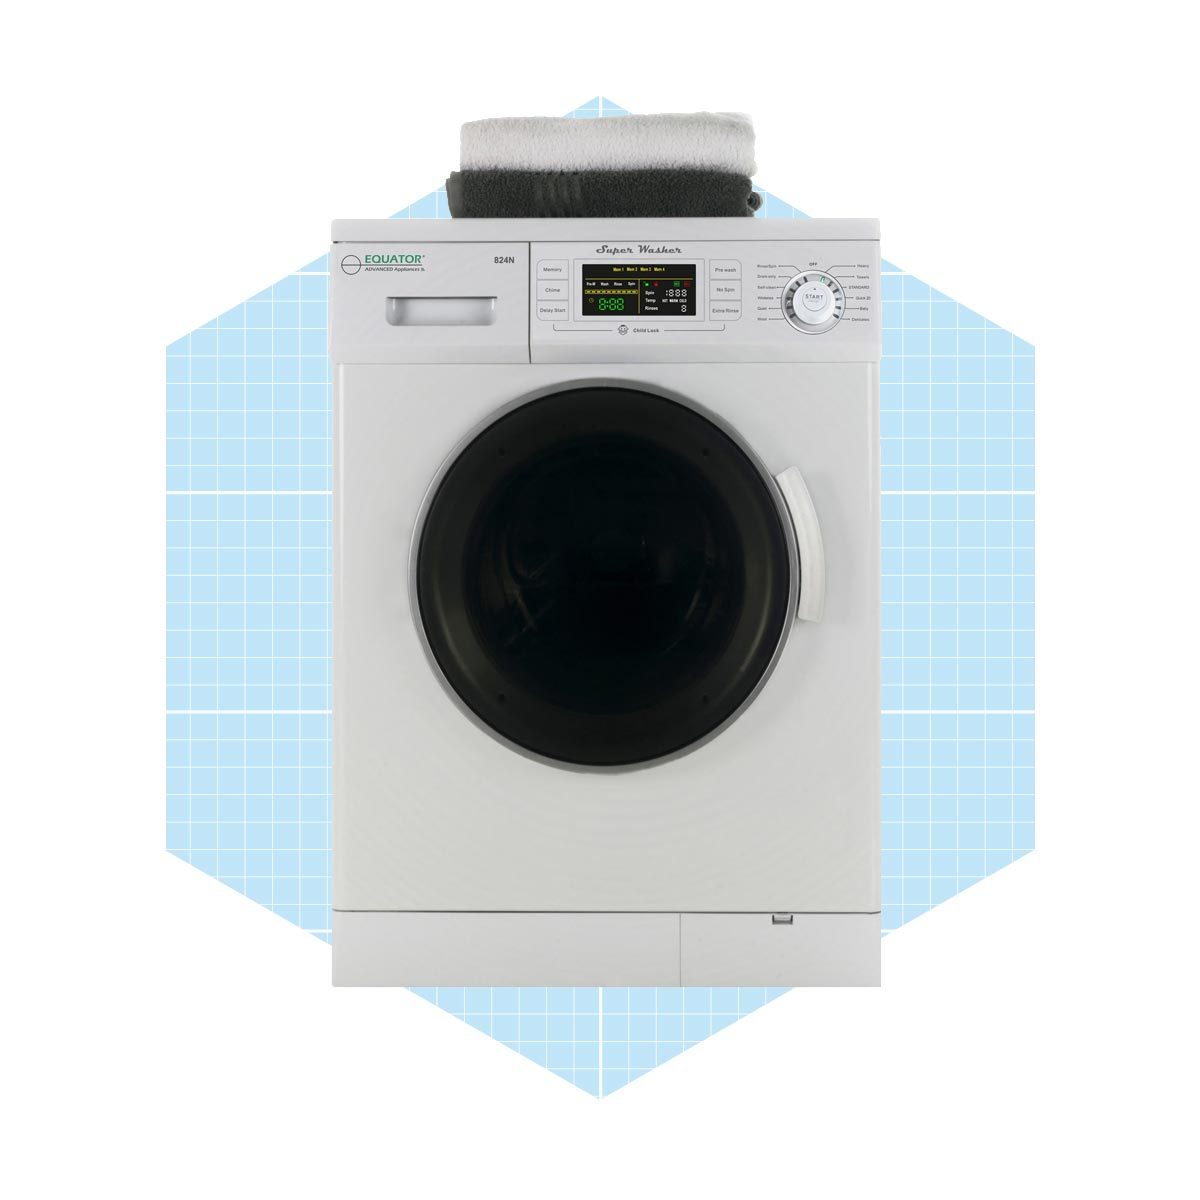 8 Best Mini Portable Dryers Reviews 